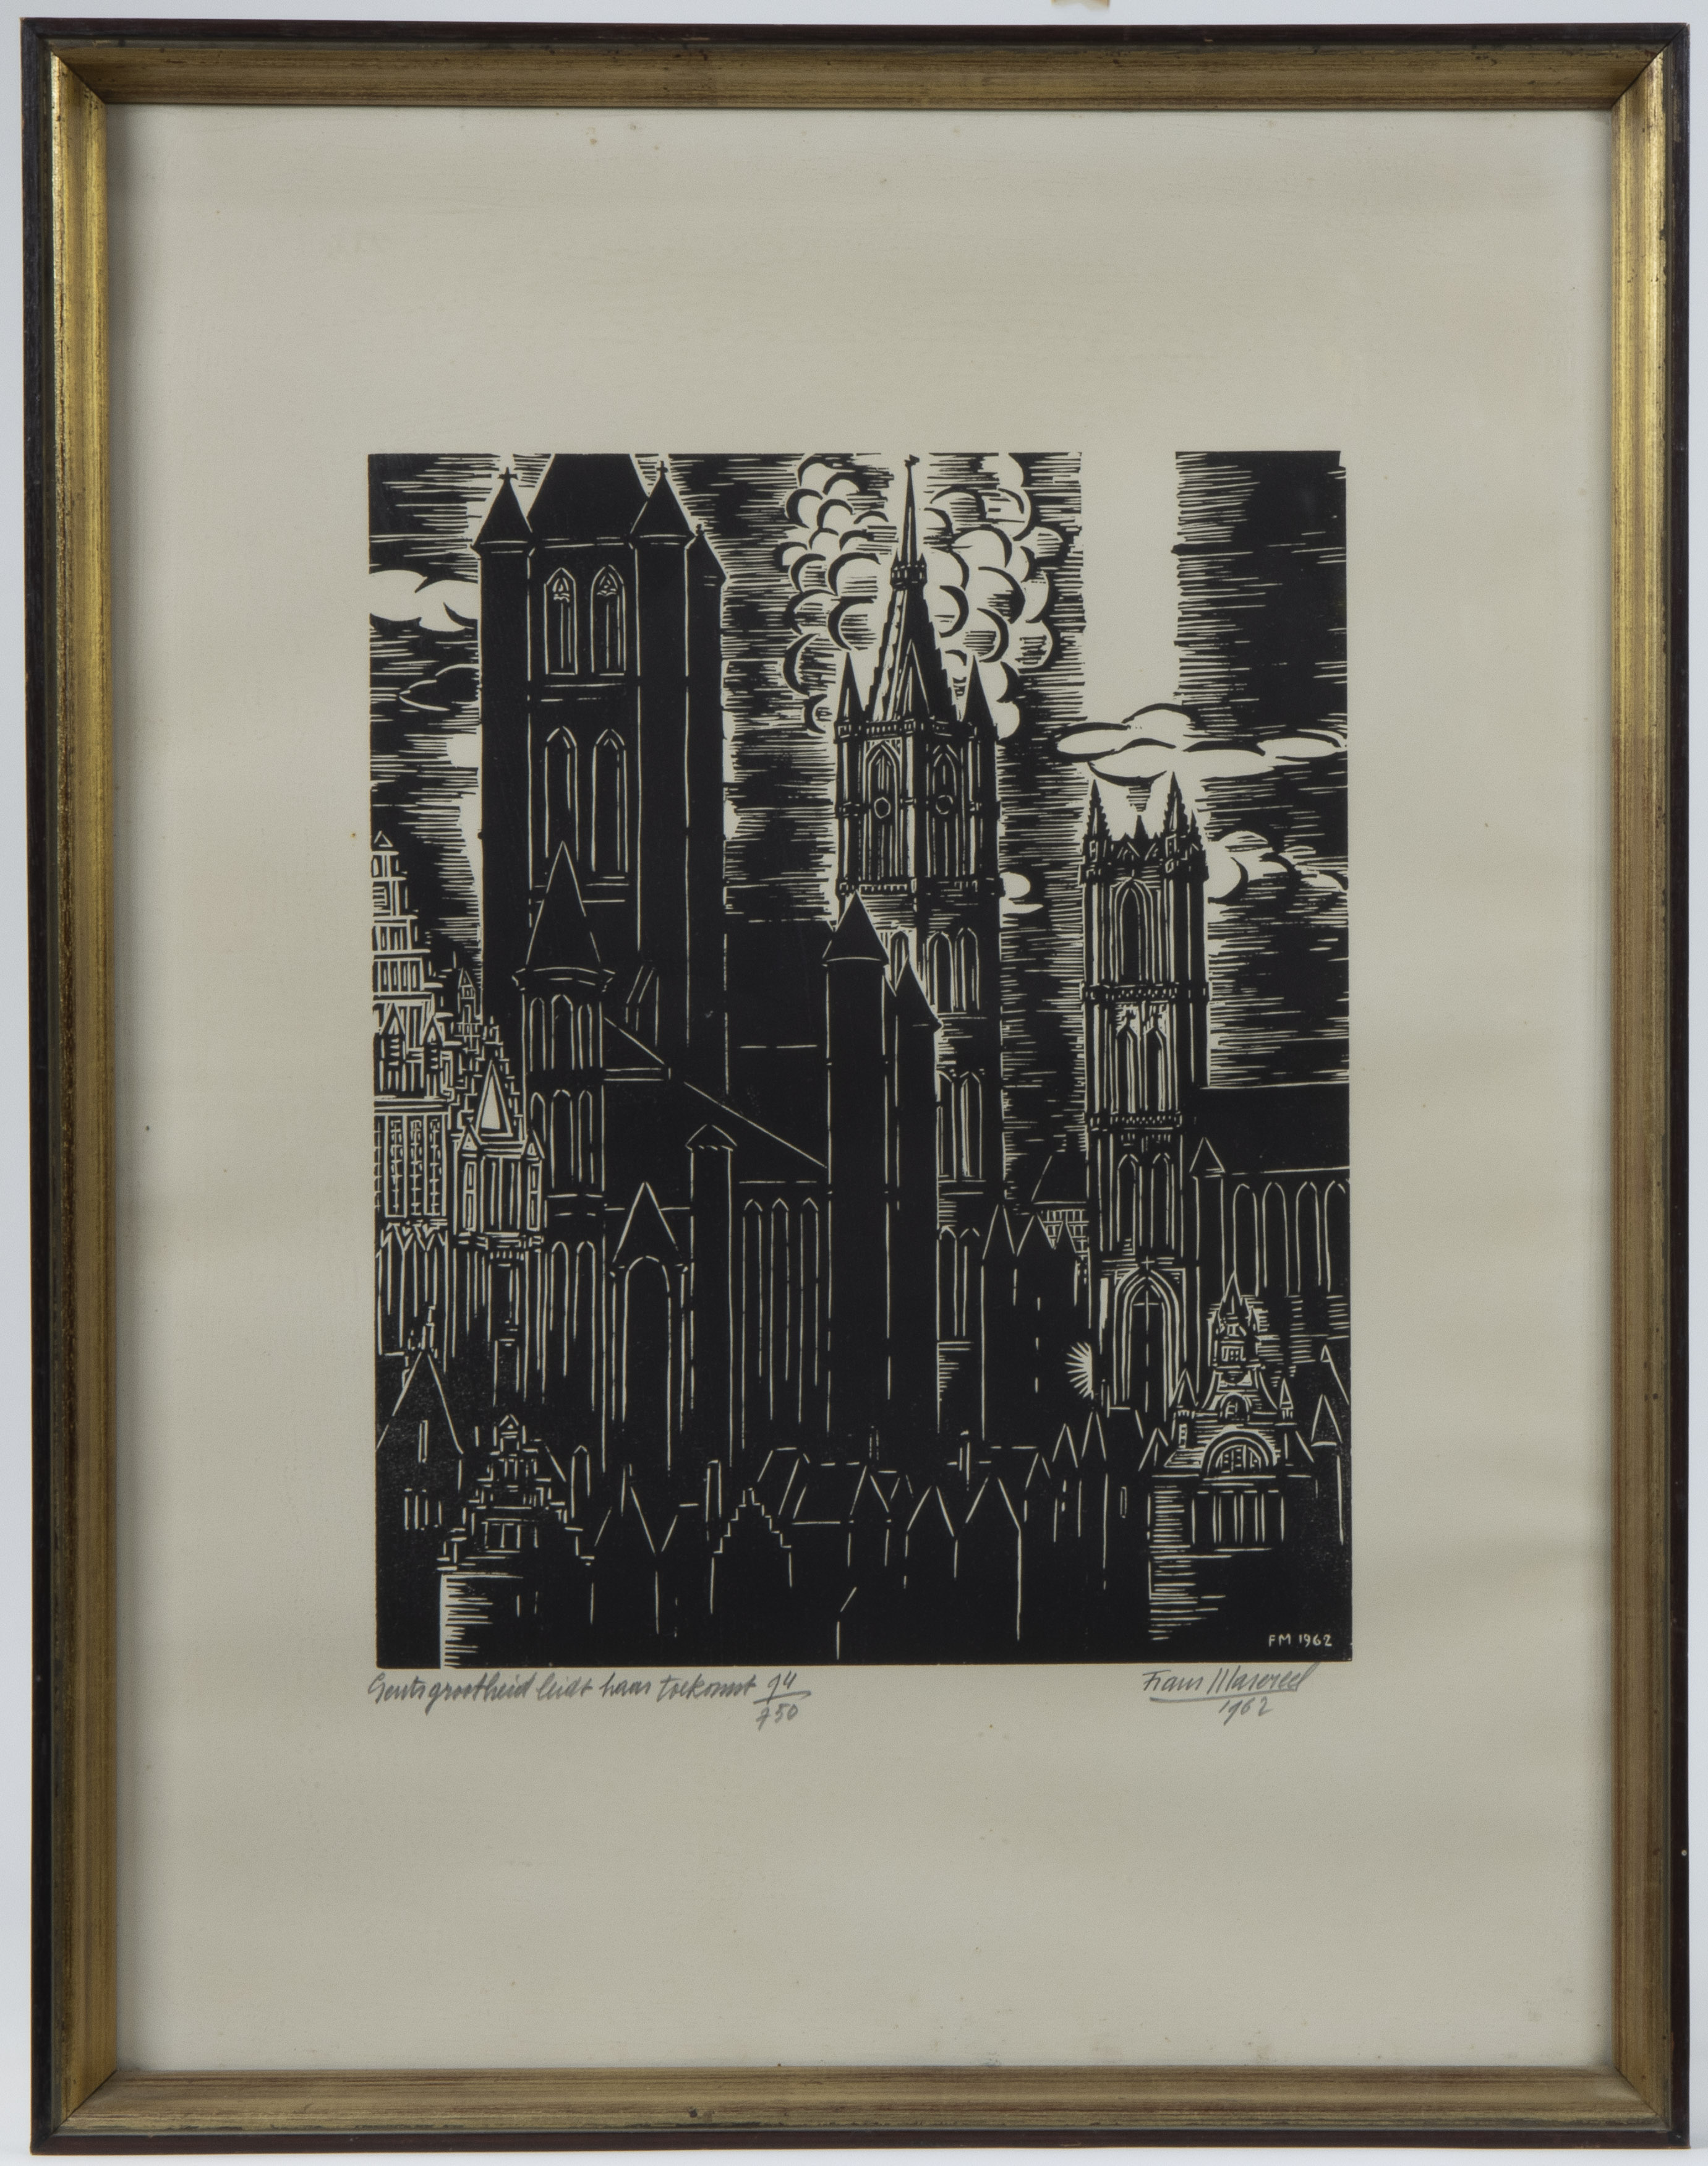 Frans MASEREEL (1889-1972), woodcut 'Gents grootheid leidt haar toekomst', numbered 97/750, signed a - Image 2 of 4